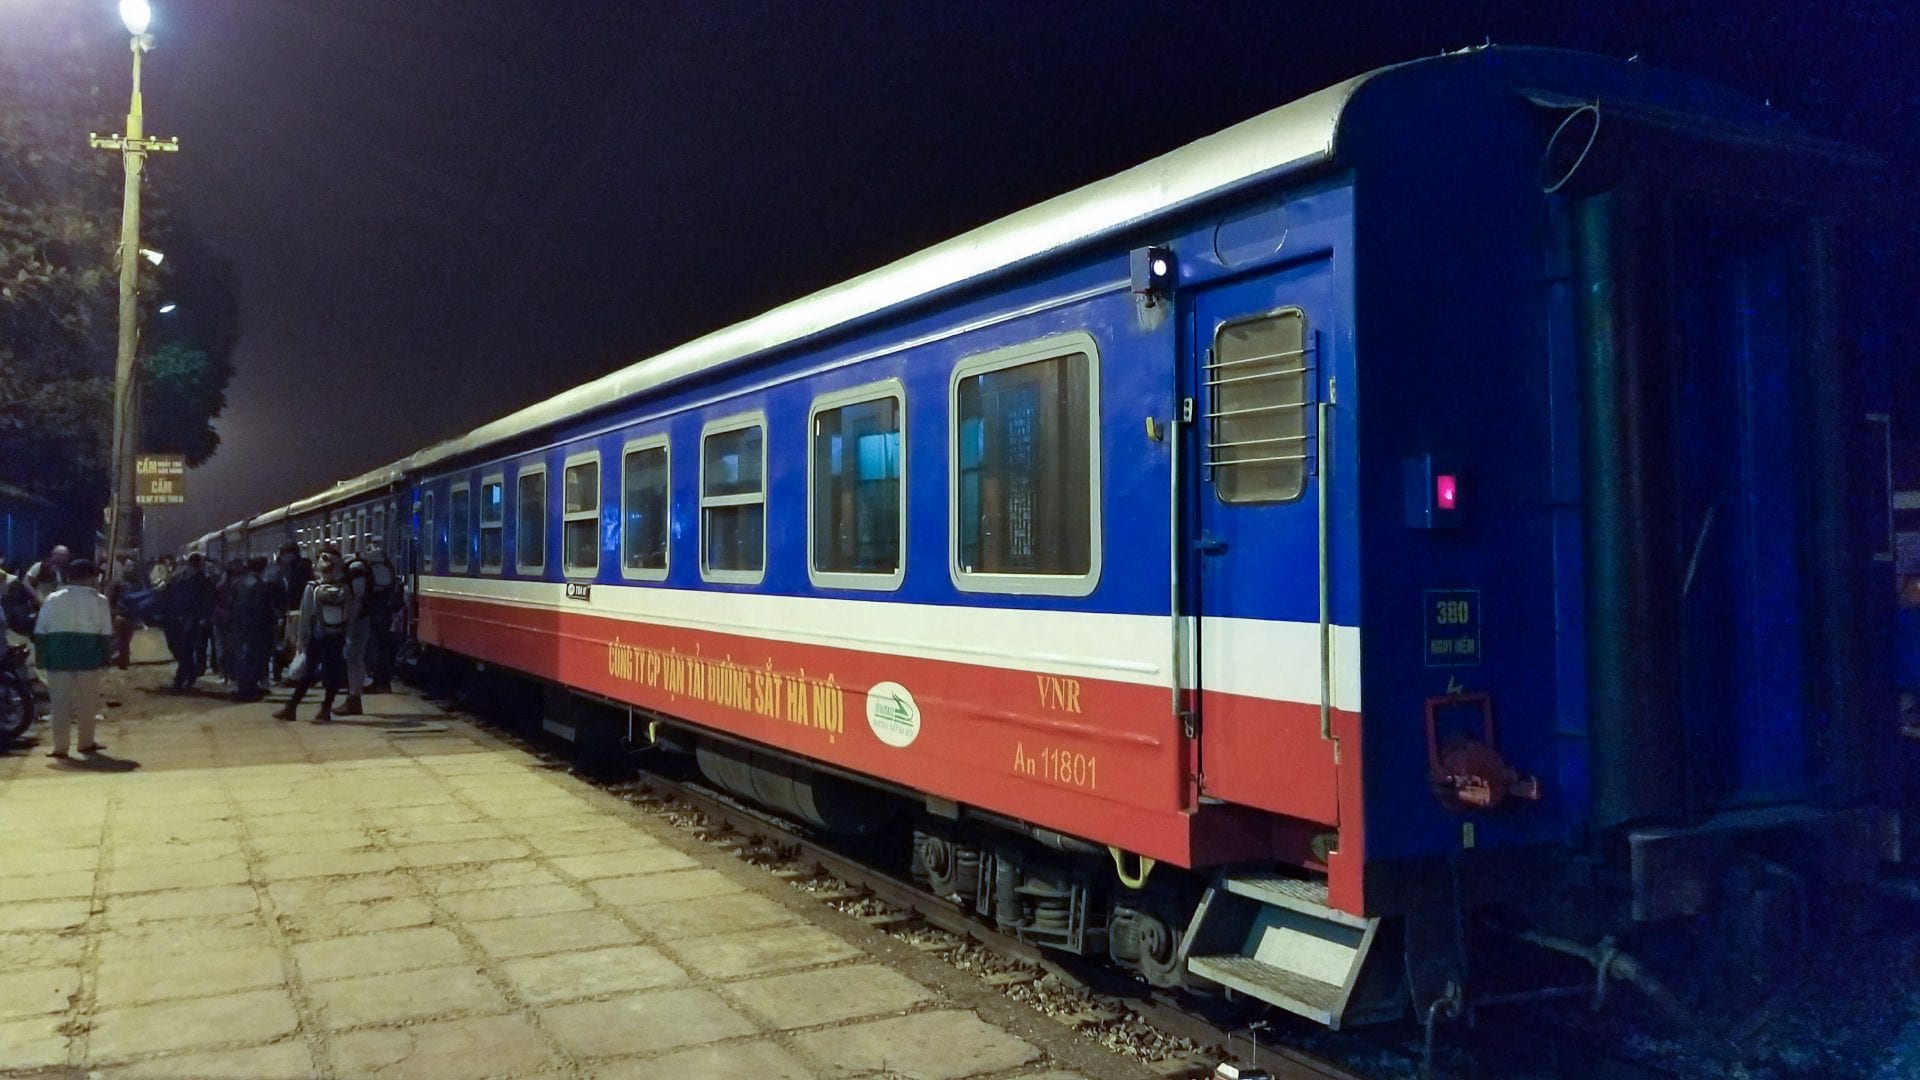 Train to Sapa from Hanoi